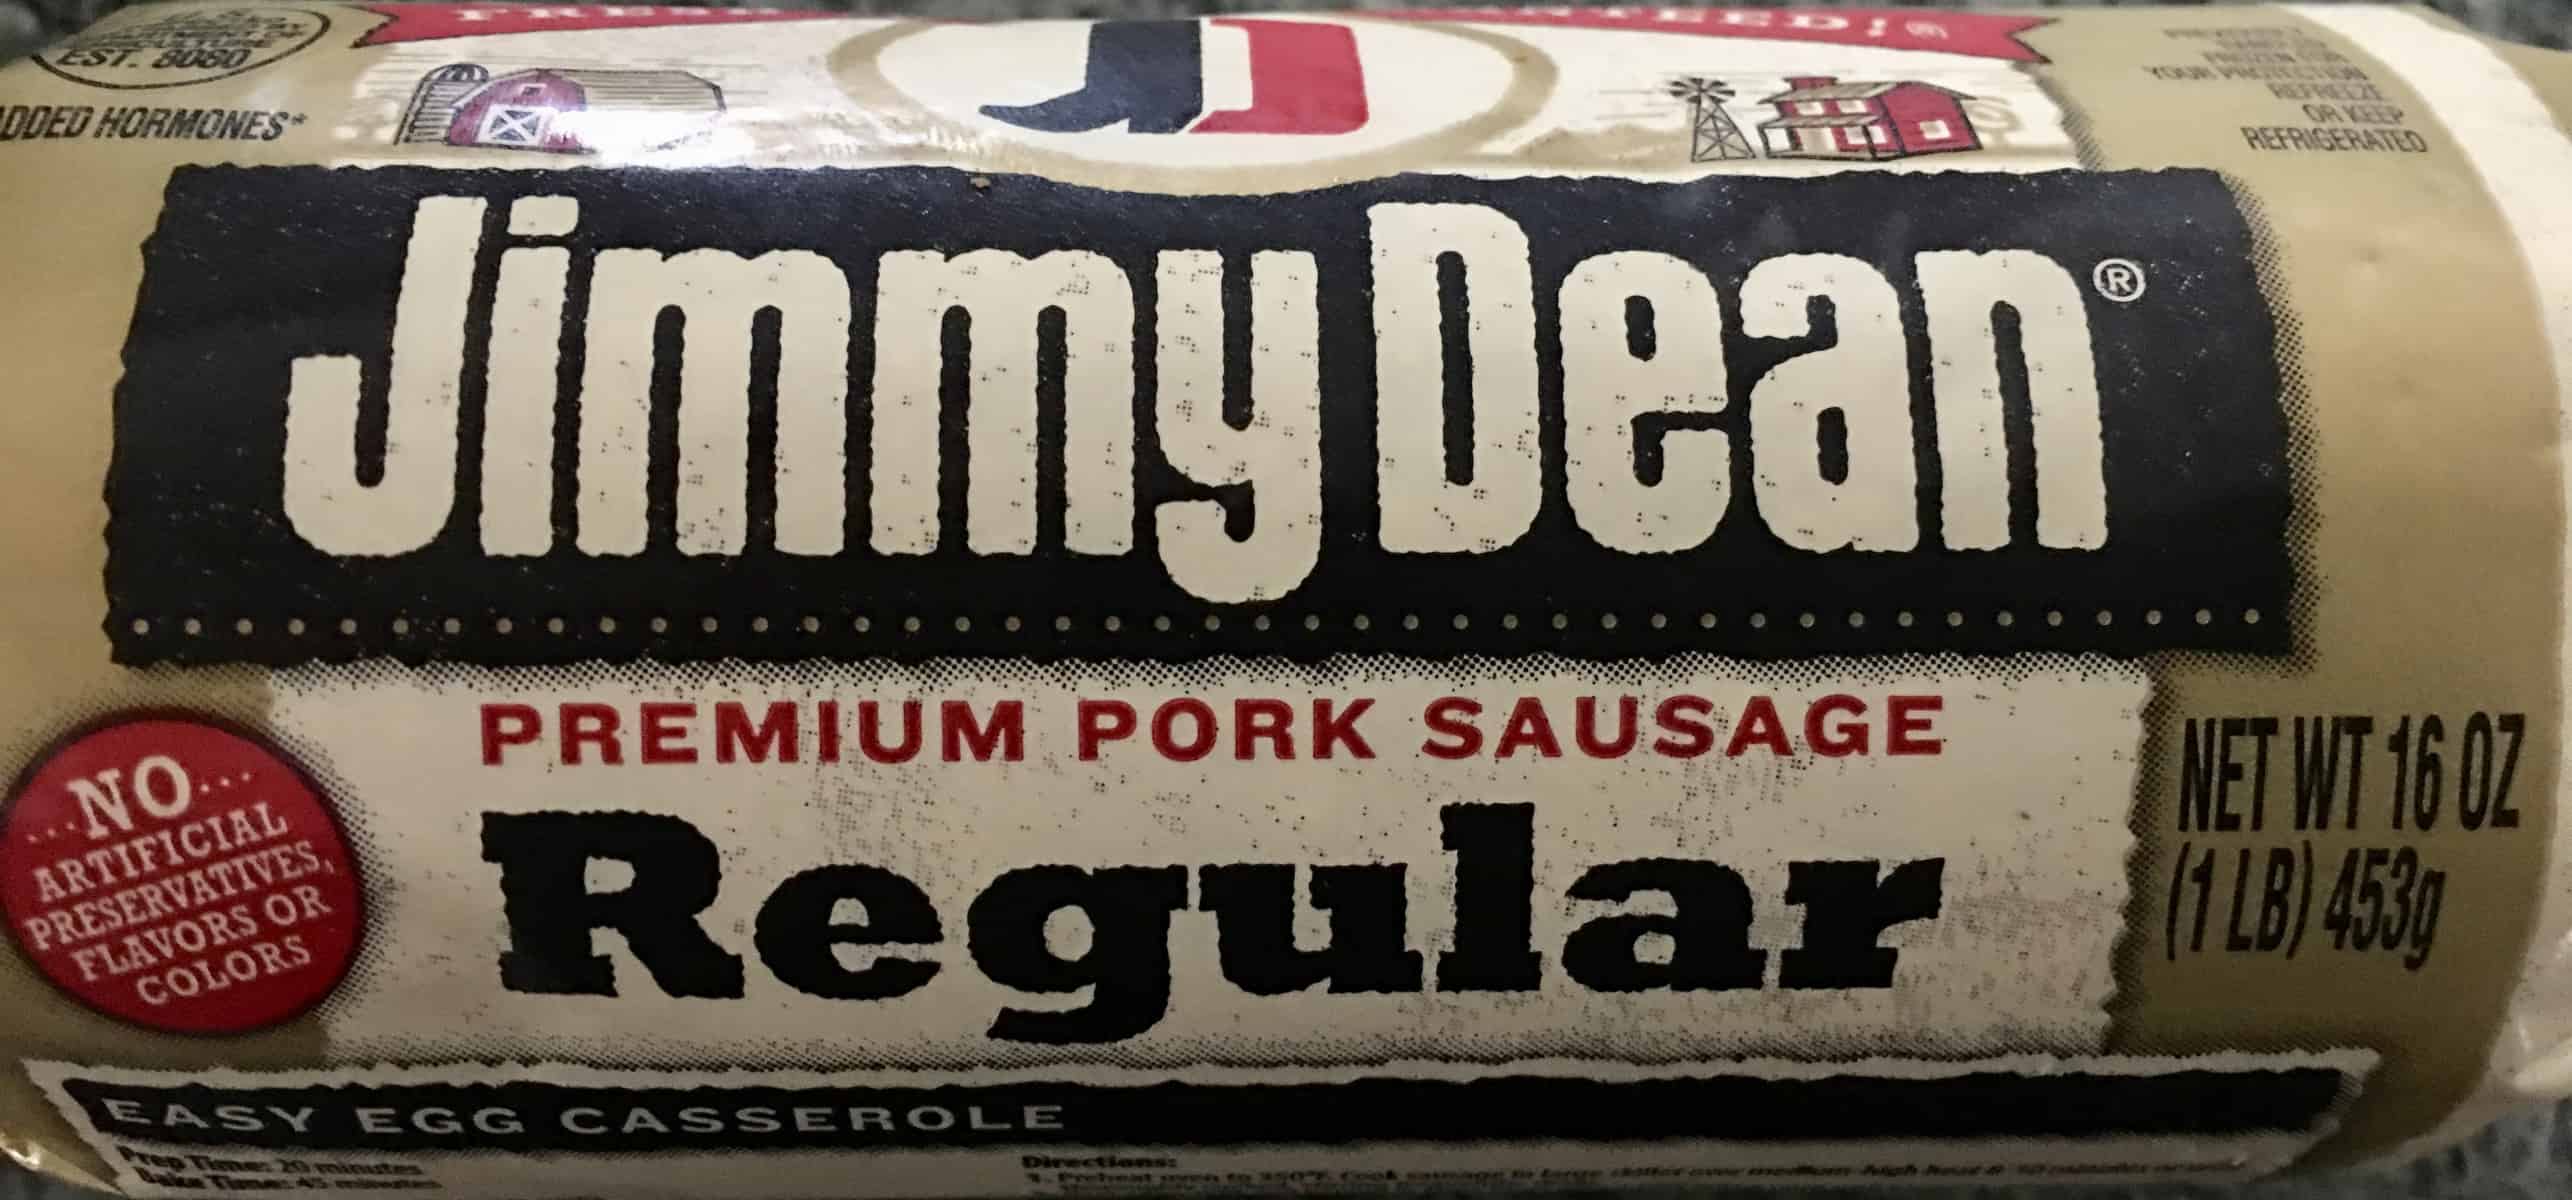 jimmy dean pork sausage. 